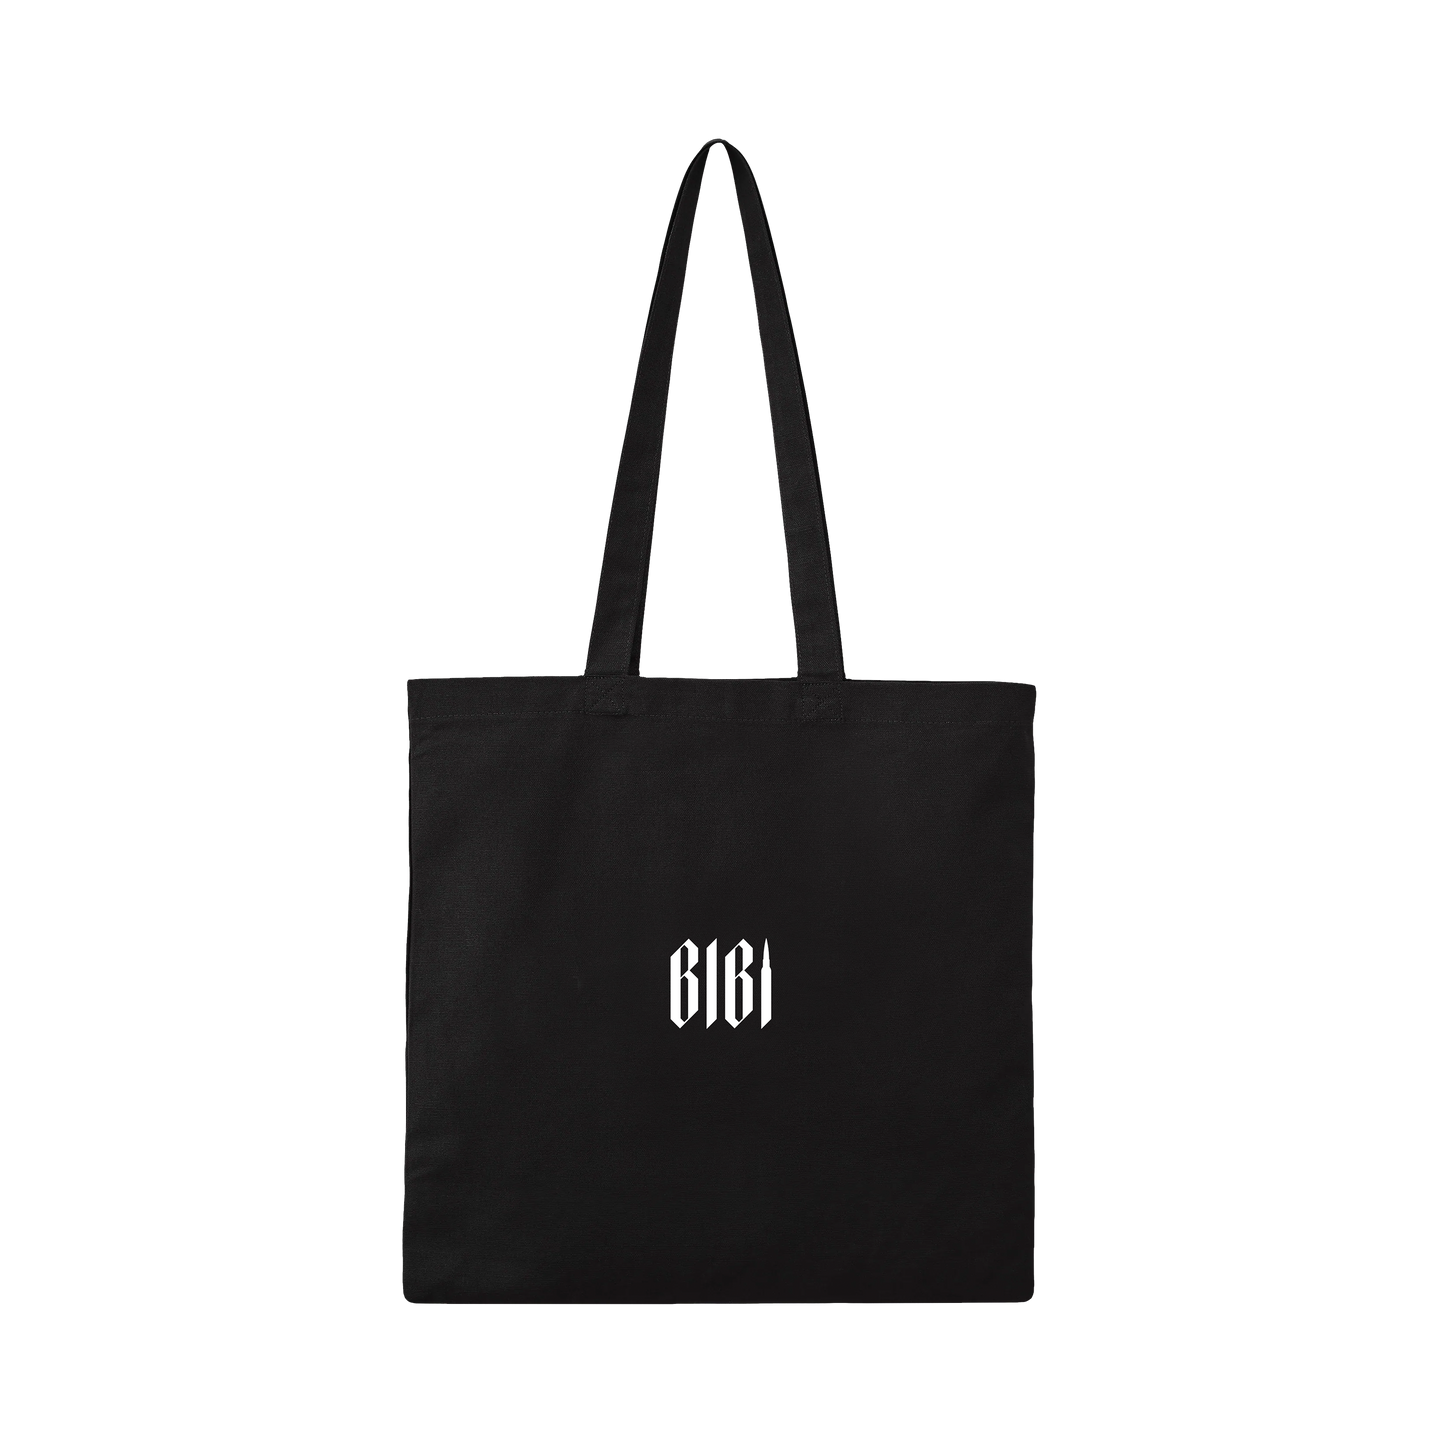 Bibi Black Tote Bag